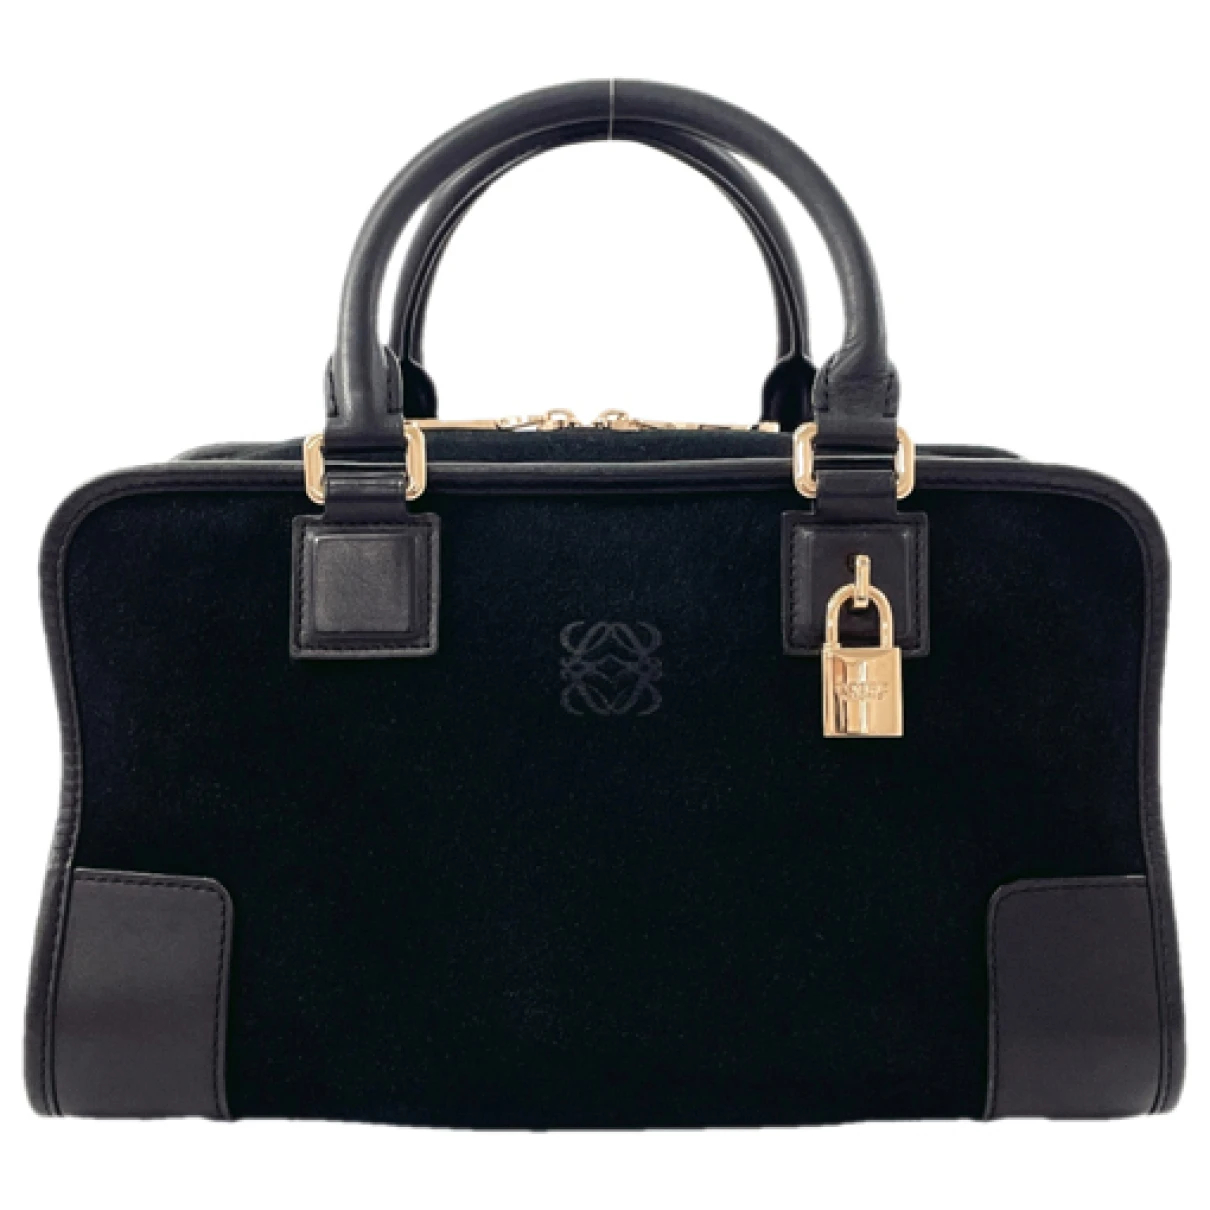 Pre-owned Loewe Handbag In Black